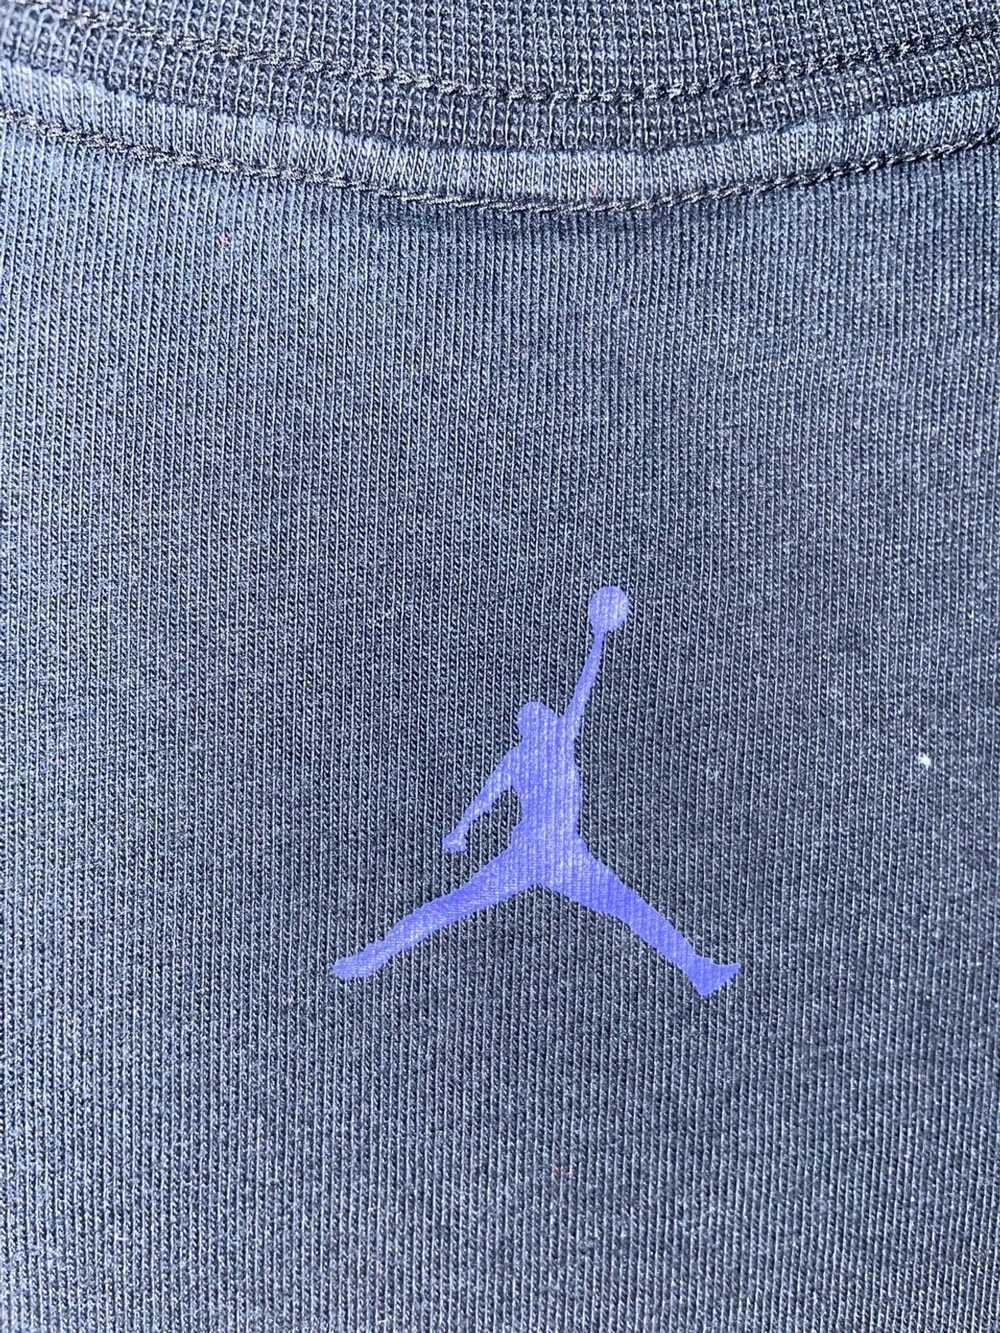 Jordan Brand Vintage Jordan Shirt Big Logo Embroi… - image 5